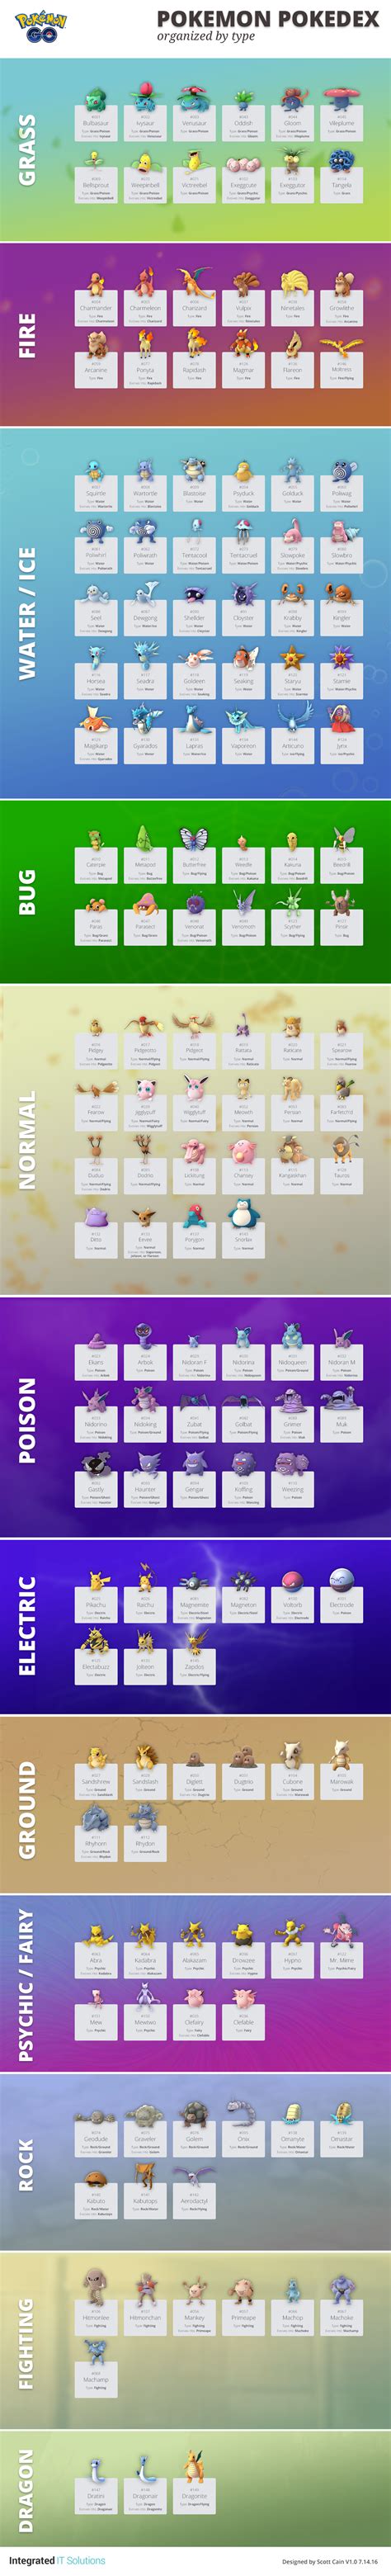 Pokemon Go Pokedex List Sorted By Type [infographic]